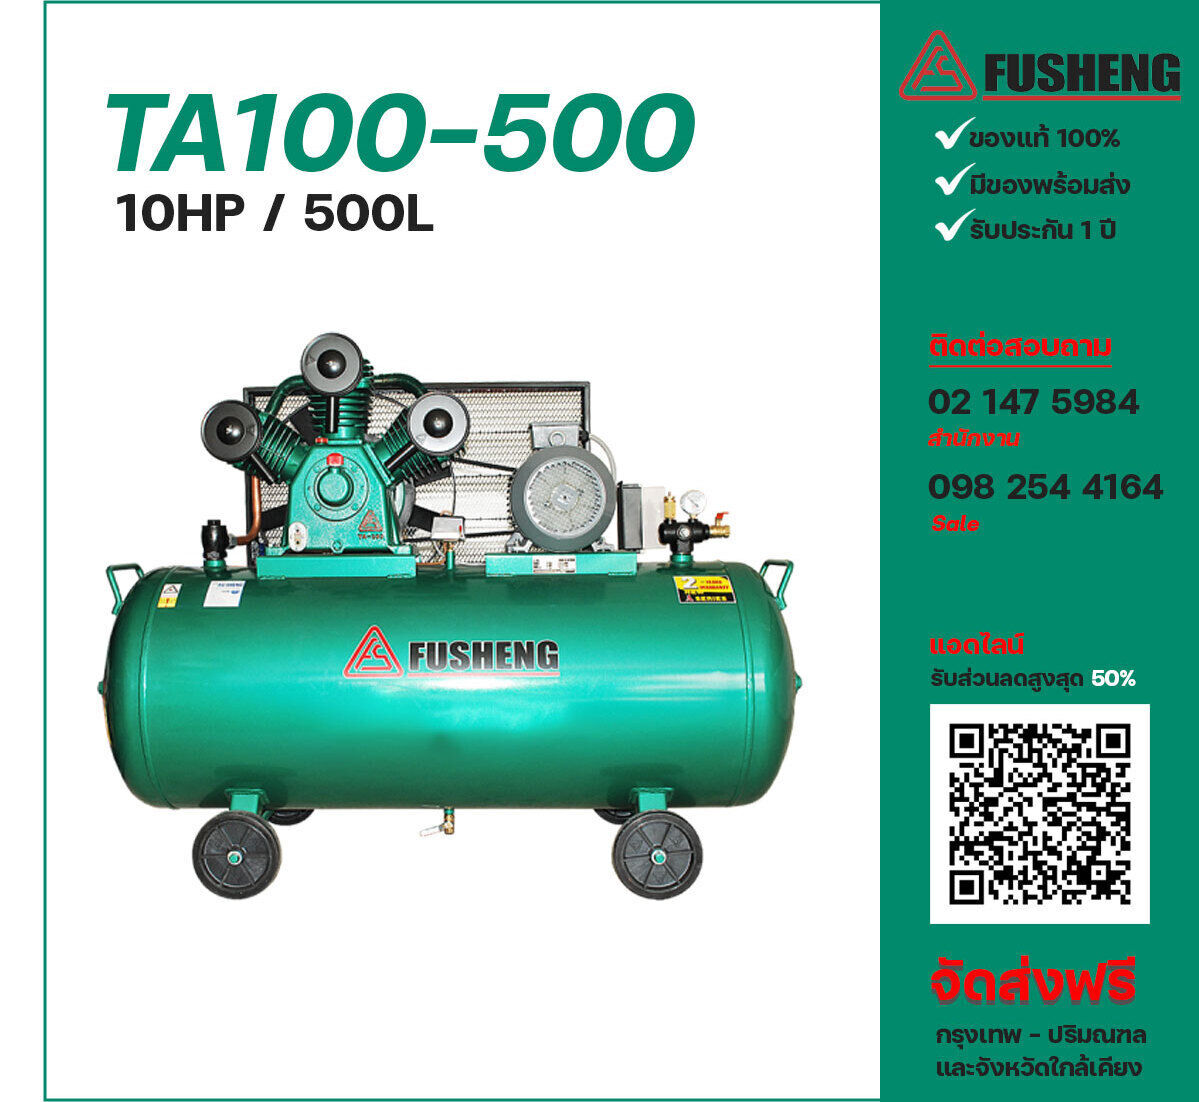 ปั๊มลมฟูเช็ง FUSHENG TA100-500 380V ปั๊มลมลูกสูบ ขนาด 3 สูบ 10 แรงม้า 500 ลิตร FUSHENG พร้อมมอเตอร์ ไฟ 380V ส่งฟรี กรุงเทพฯ-ปริมณฑล รับประกัน 1 ปี